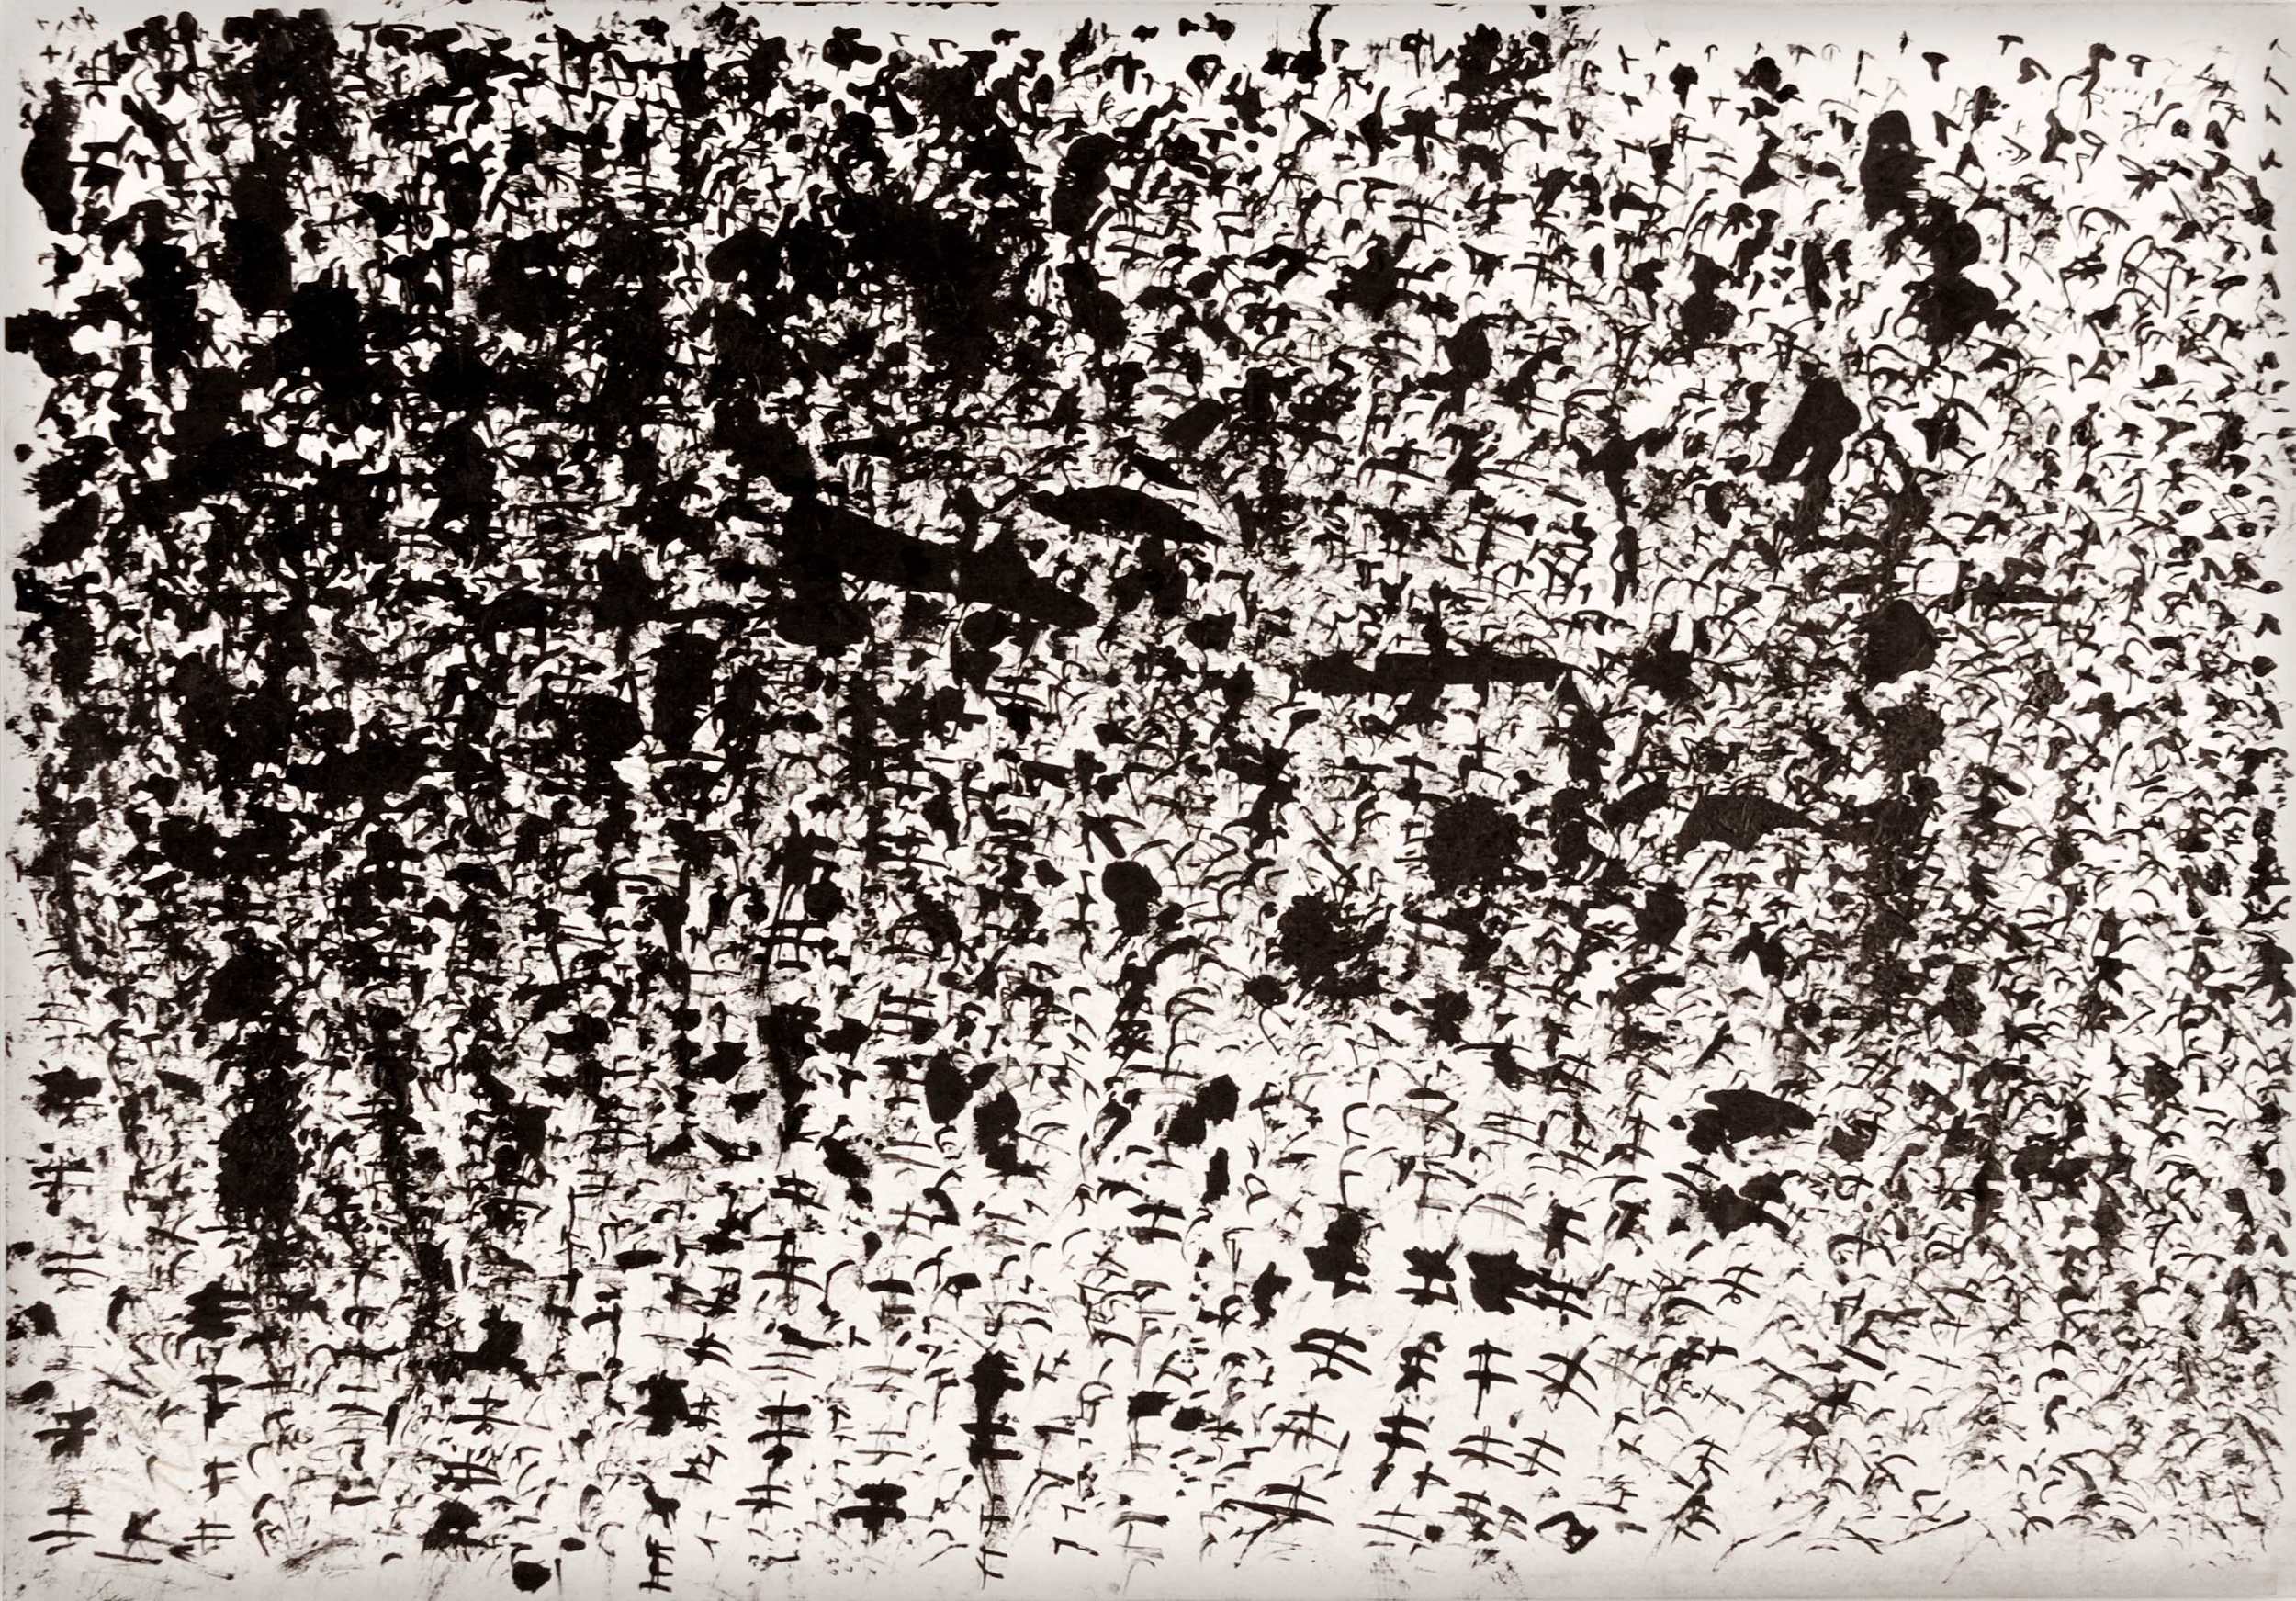   Syunji Yamagiwa    Syunji Yamagiwa (My Name)  , 2003 Ink/paper 21.5 x 15 inches 54.6 x 38.1 cm SYa 7 